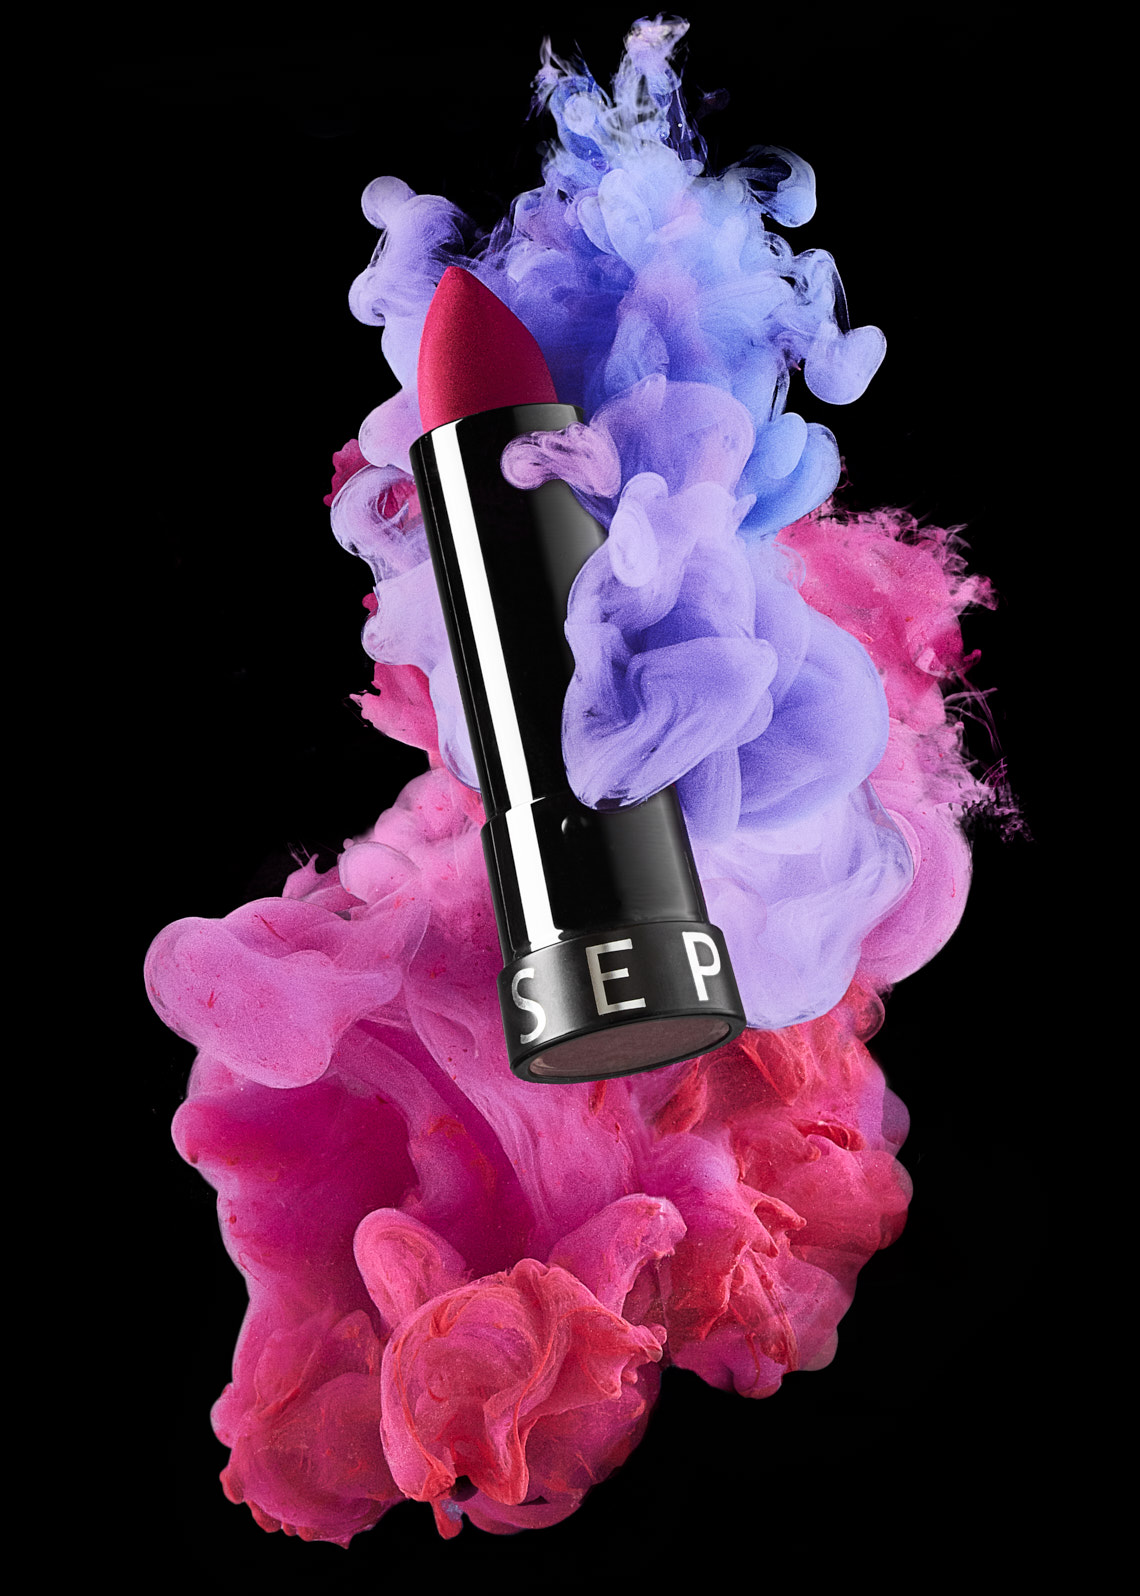 Sephora Lipstick - Ink in Water Charlie Sin